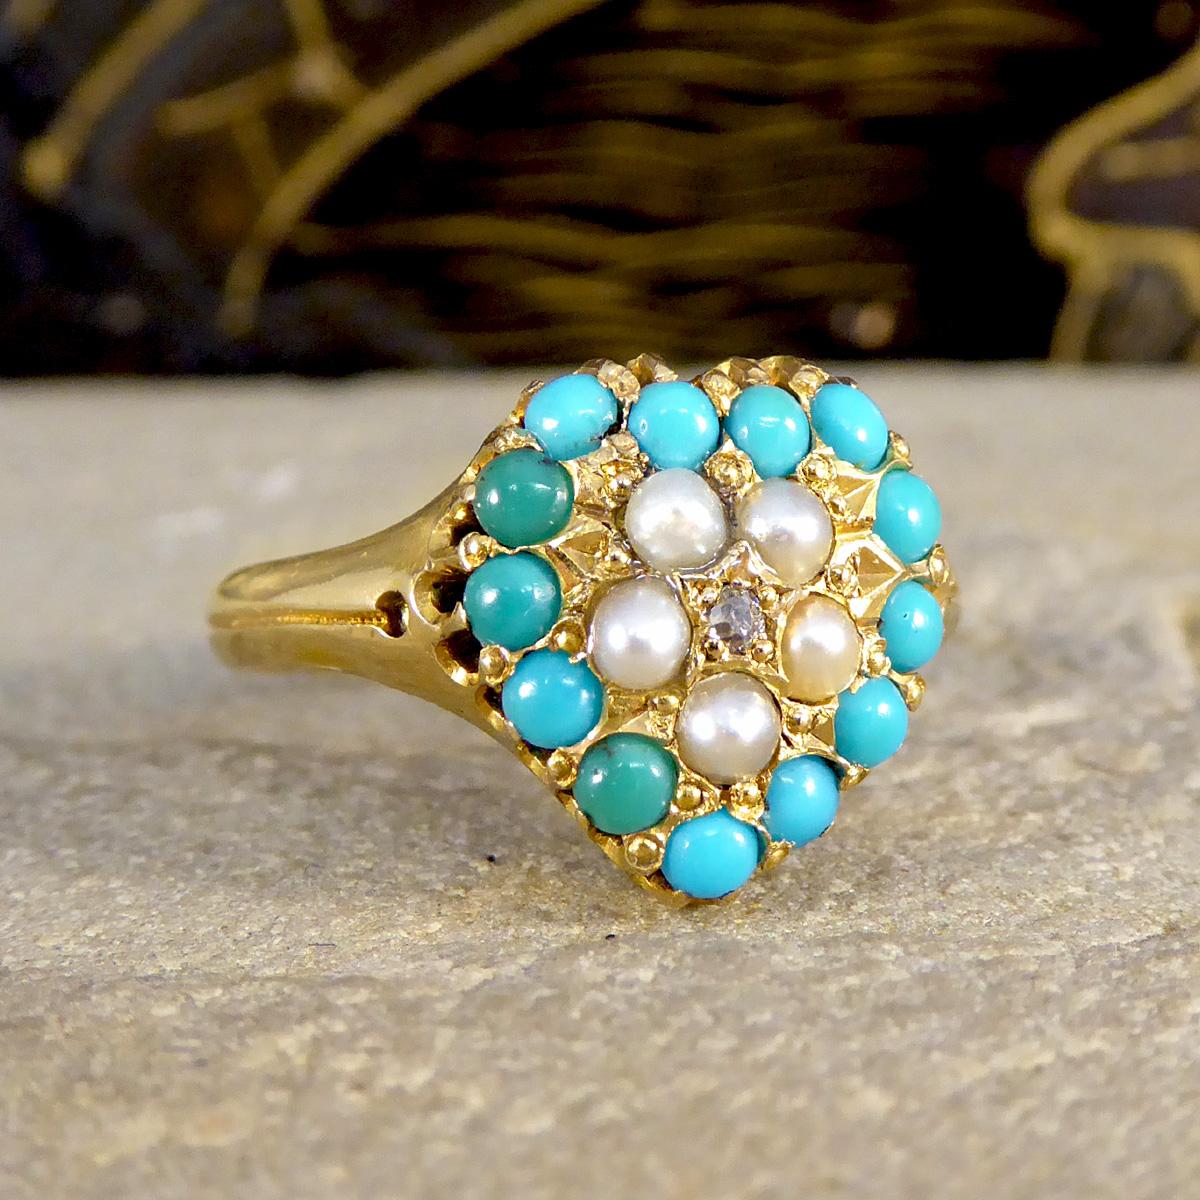 Entrez dans l'ère romantique de l'élégance victorienne avec notre bague en forme de cœur, ornée de turquoises, de perles de rocaille et de diamants. Fabriquée en 1871, cette bague est un trésor du passé, qui incarne le design complexe et sentimental